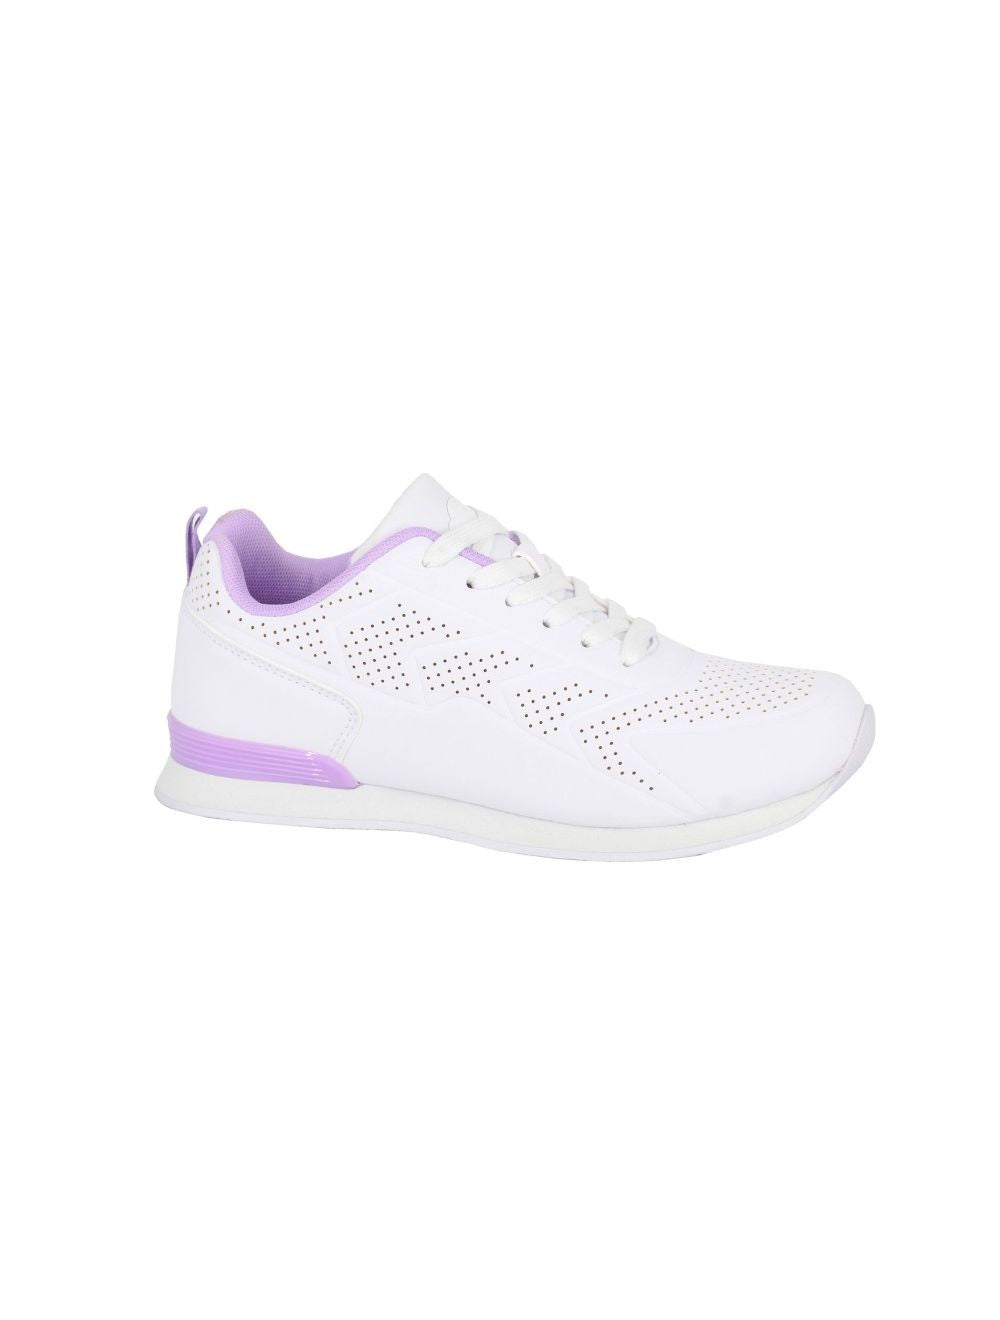 Dek Ladies Fluke Bowling Shoes - White/Lilac